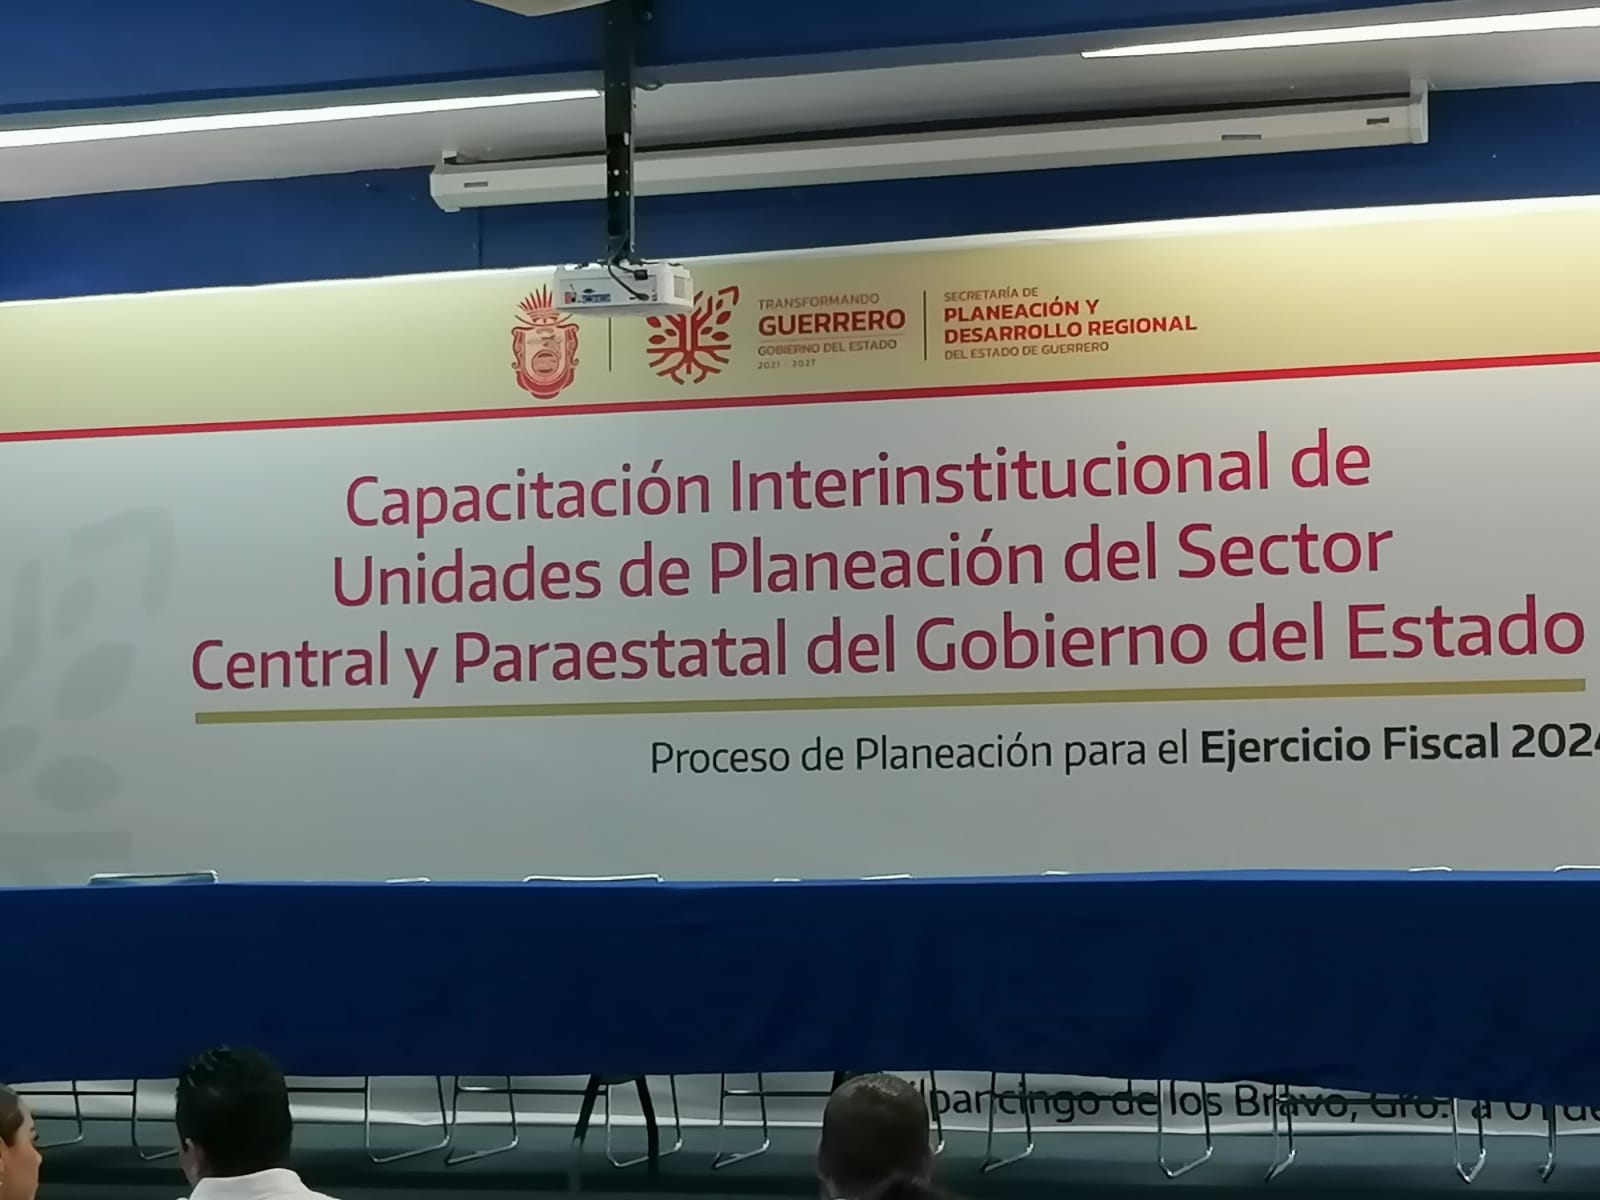 Capacitación Interinstitucional de Unidades de Planeación del Sector Central y Paraestatal del Gobierno del Estado